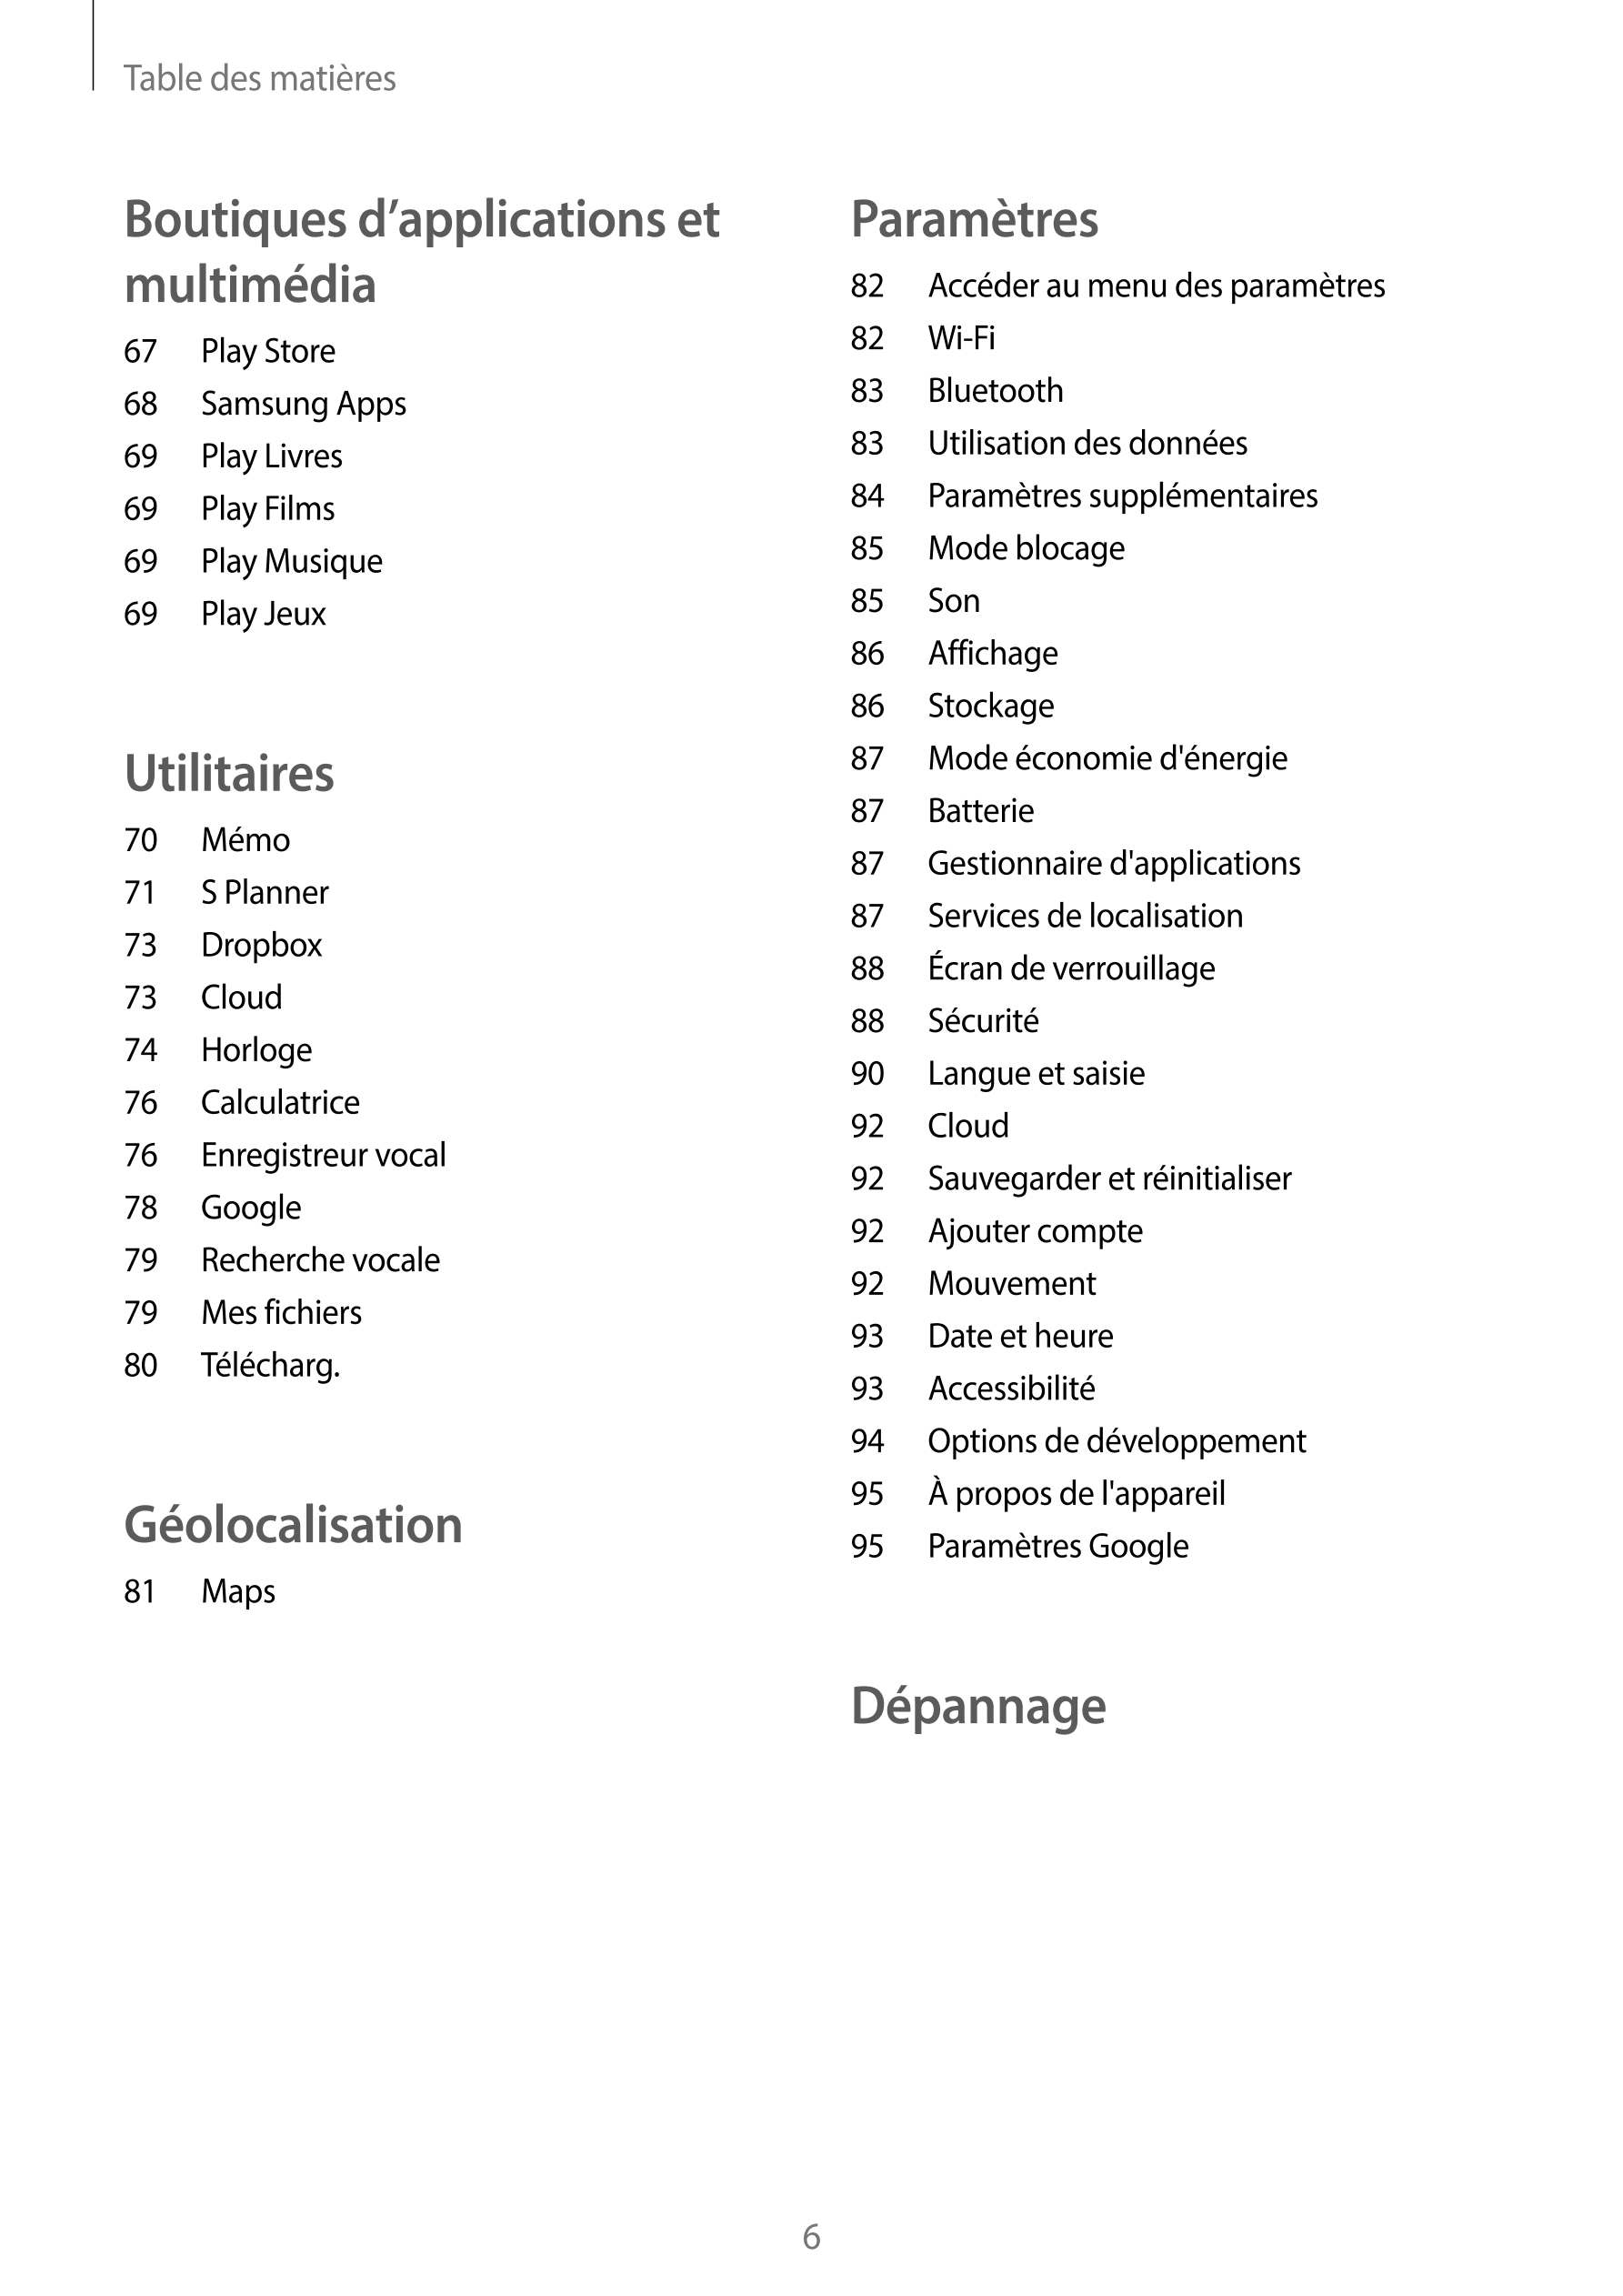 Table des matières
Boutiques d’applications et  Paramètres
multimédia 82  Accéder au menu des paramètres
67  Play Store 82  Wi-F